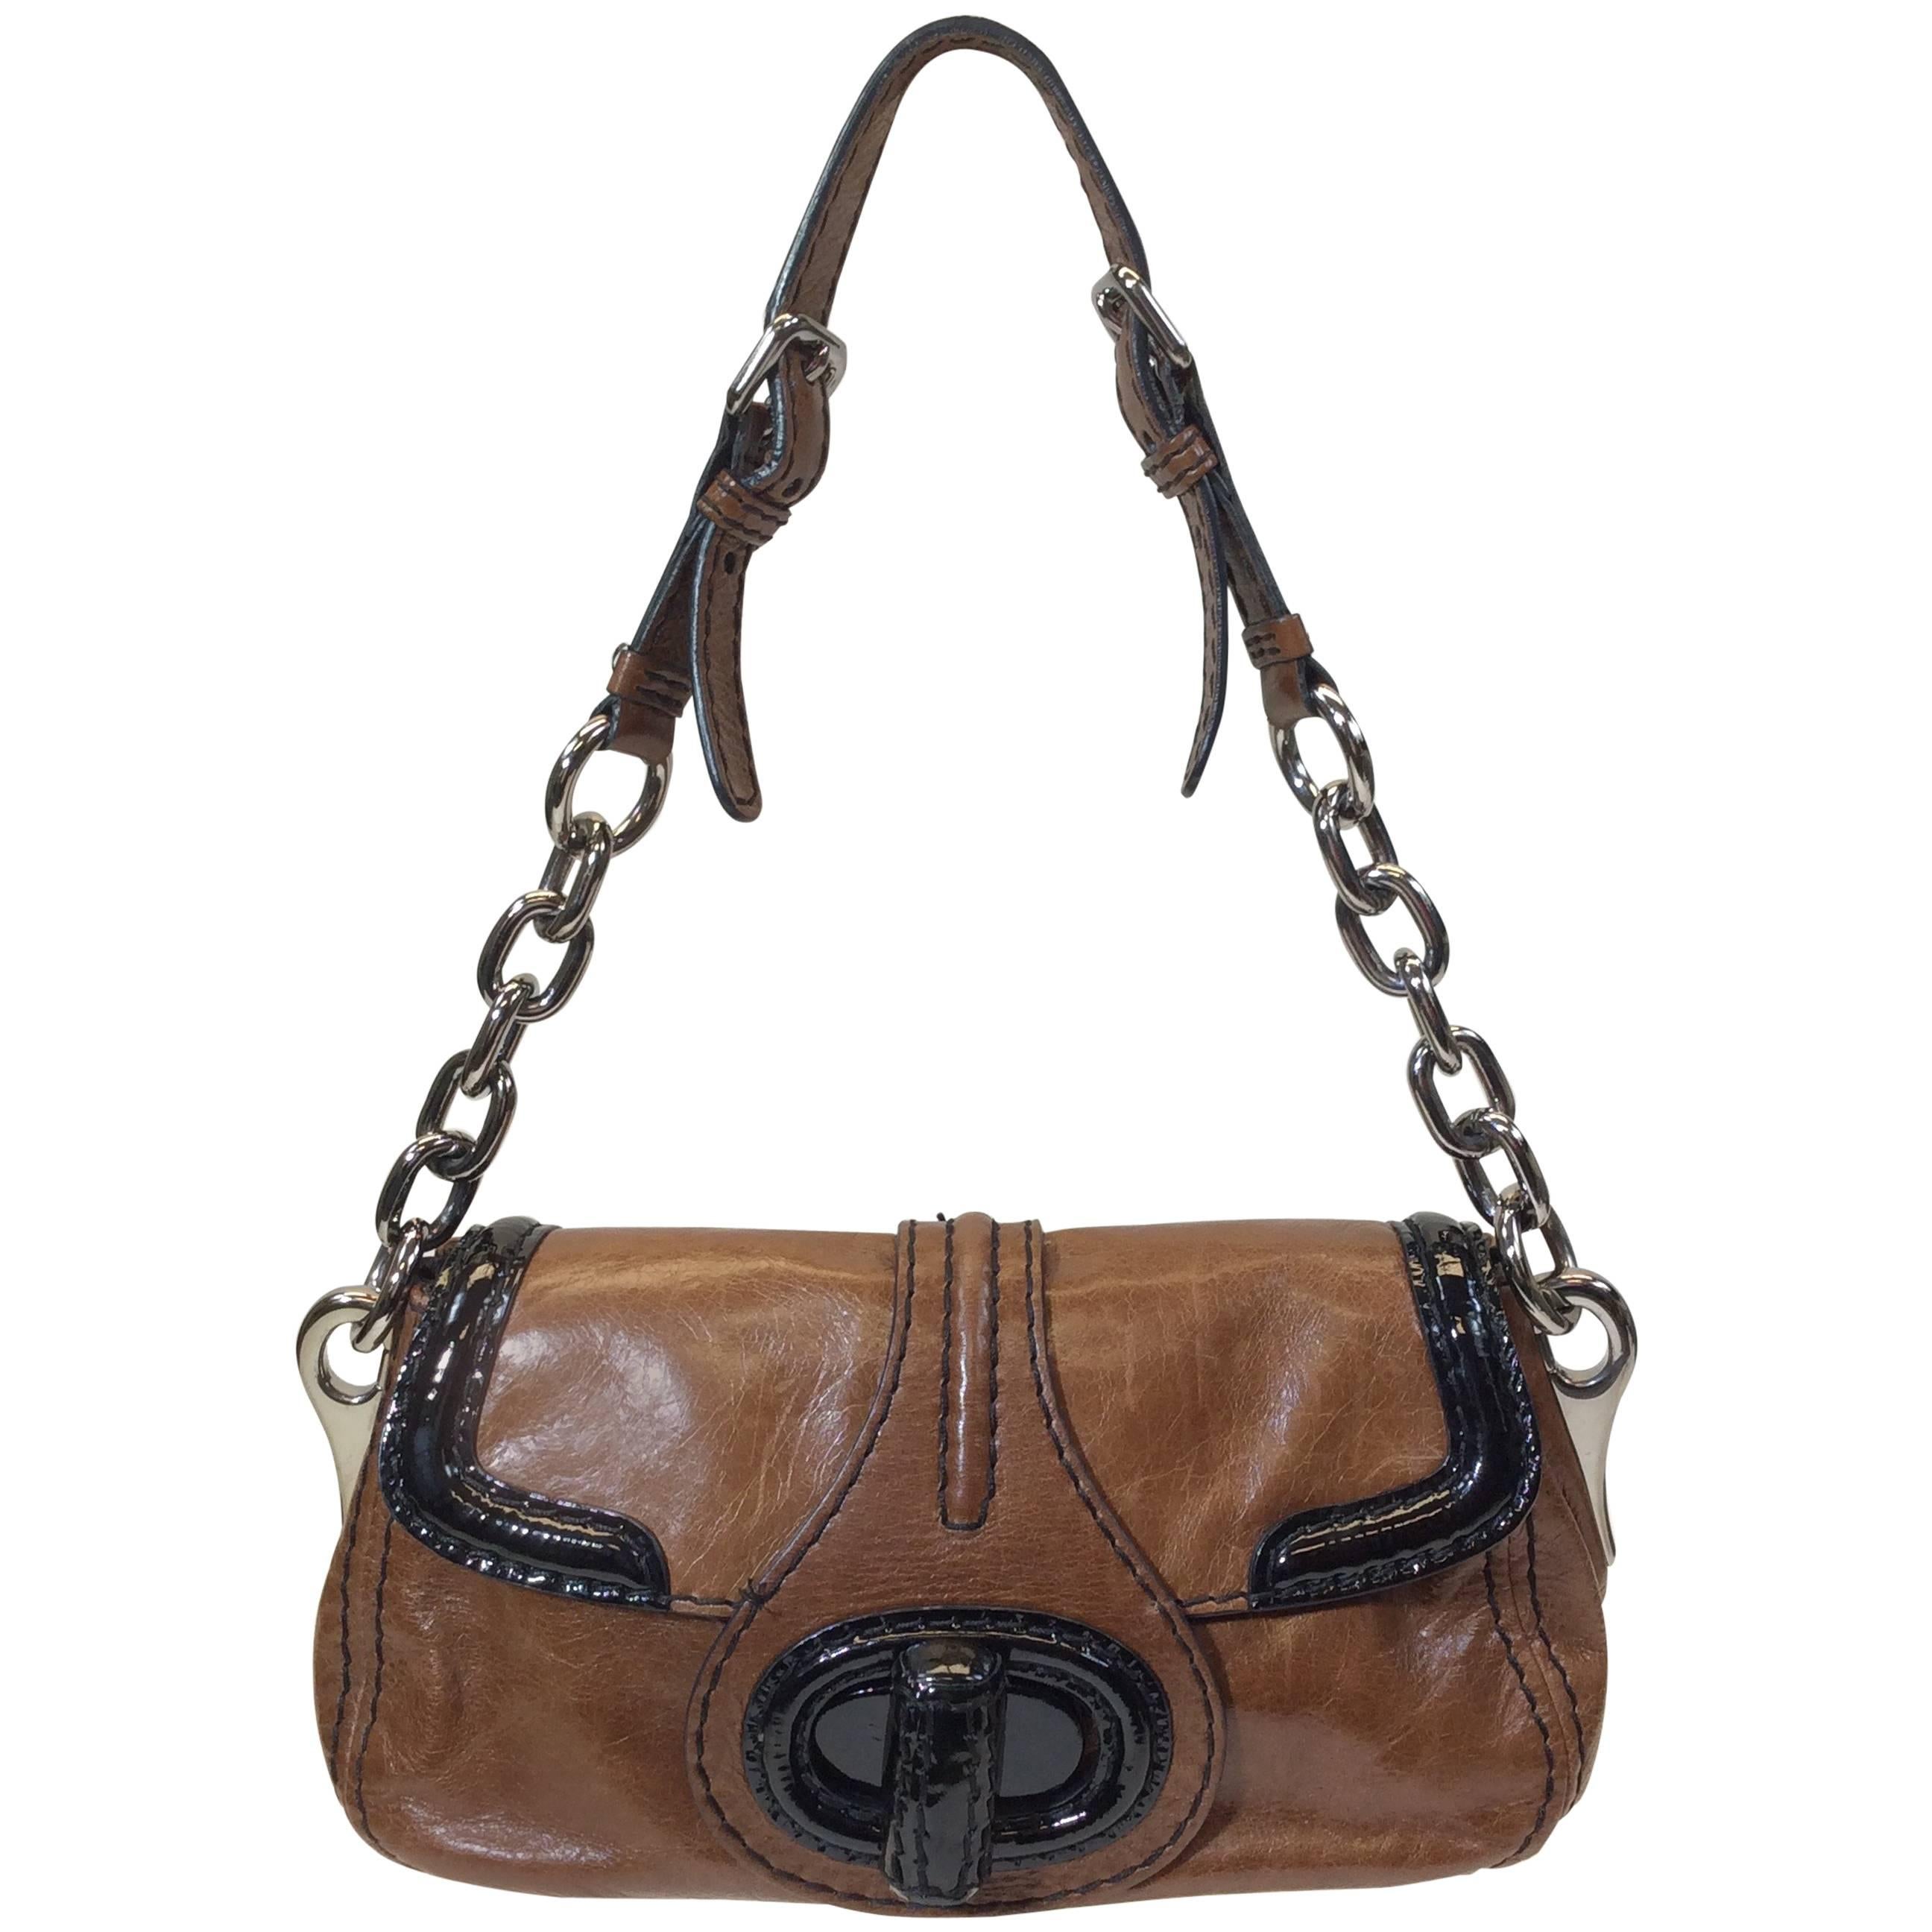 Prada Brown and Black Leather Handbag